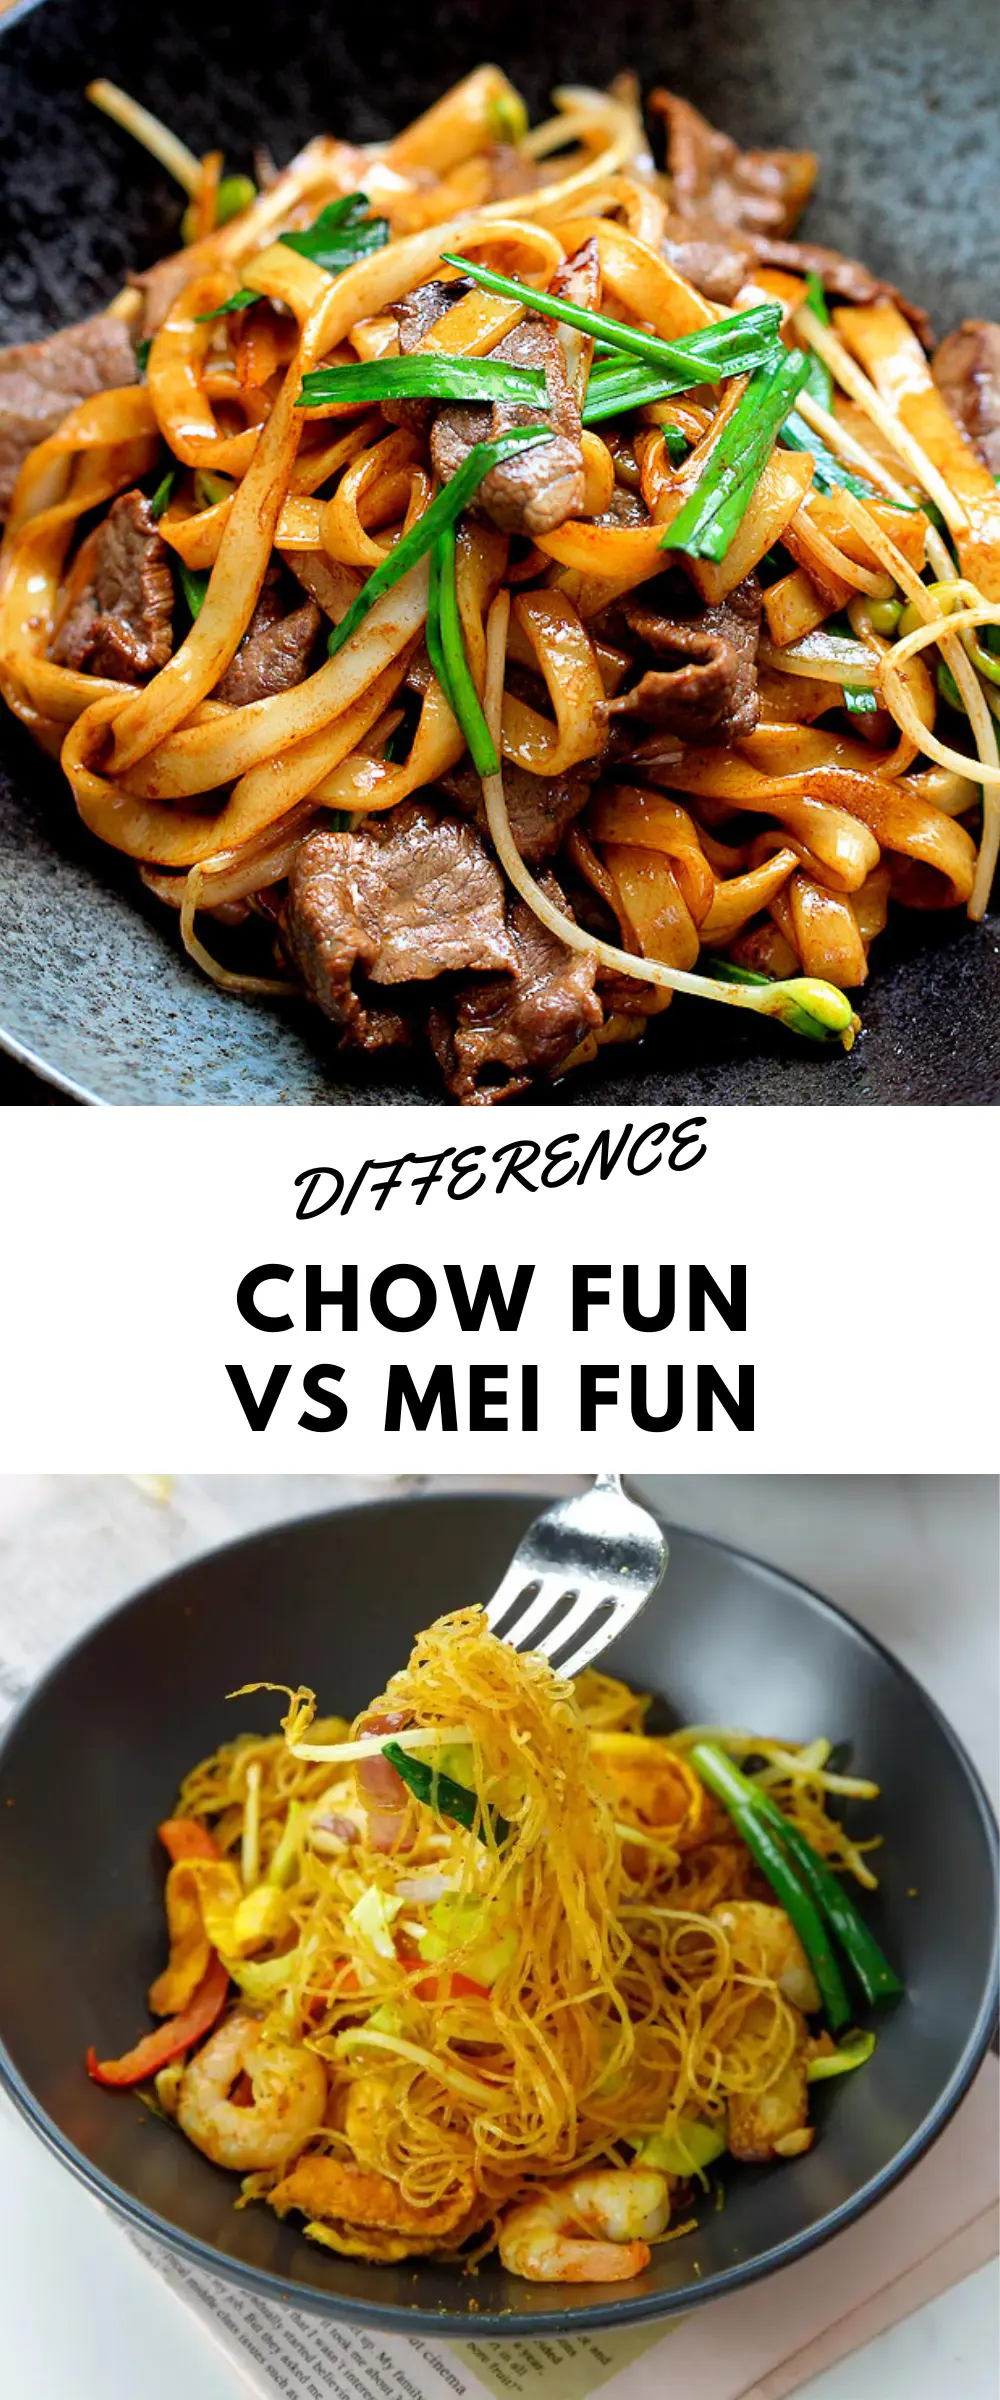 chow fun vs Mei fun|chinasichuanfood.com